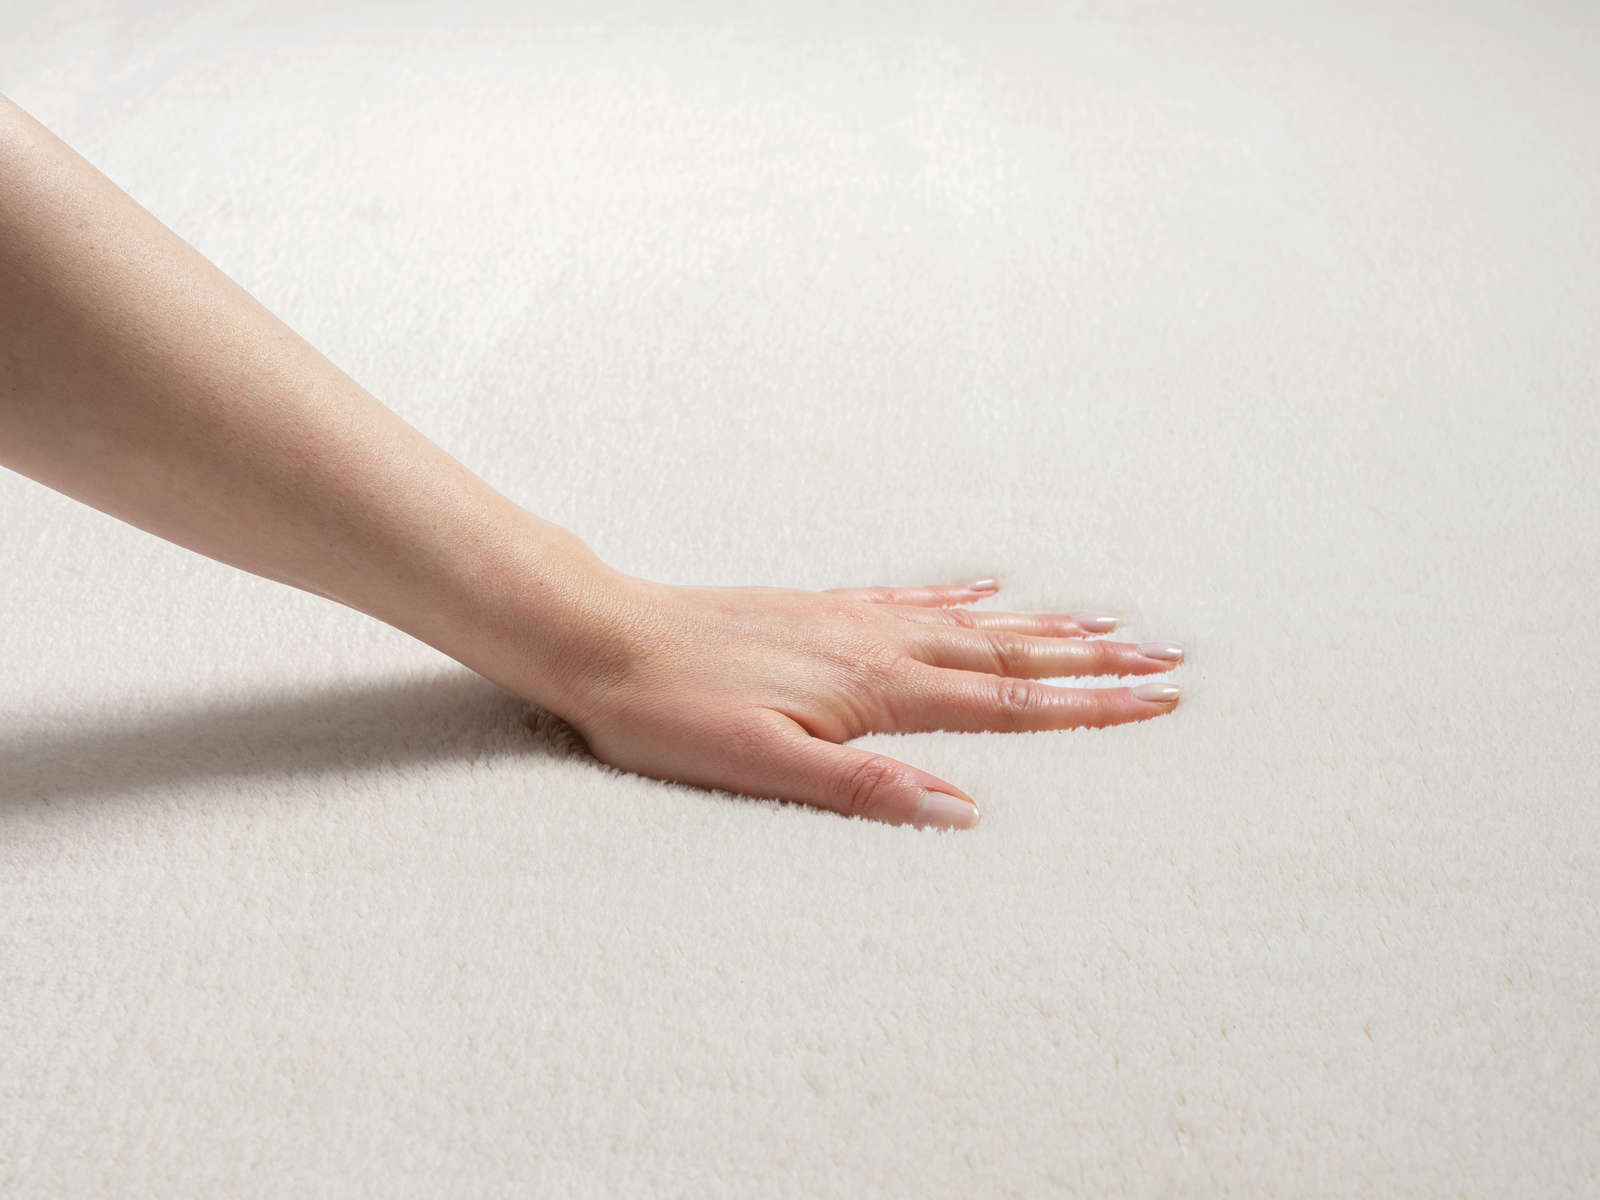             Fashionable high pile carpet in cream - 170 x 120 cm
        